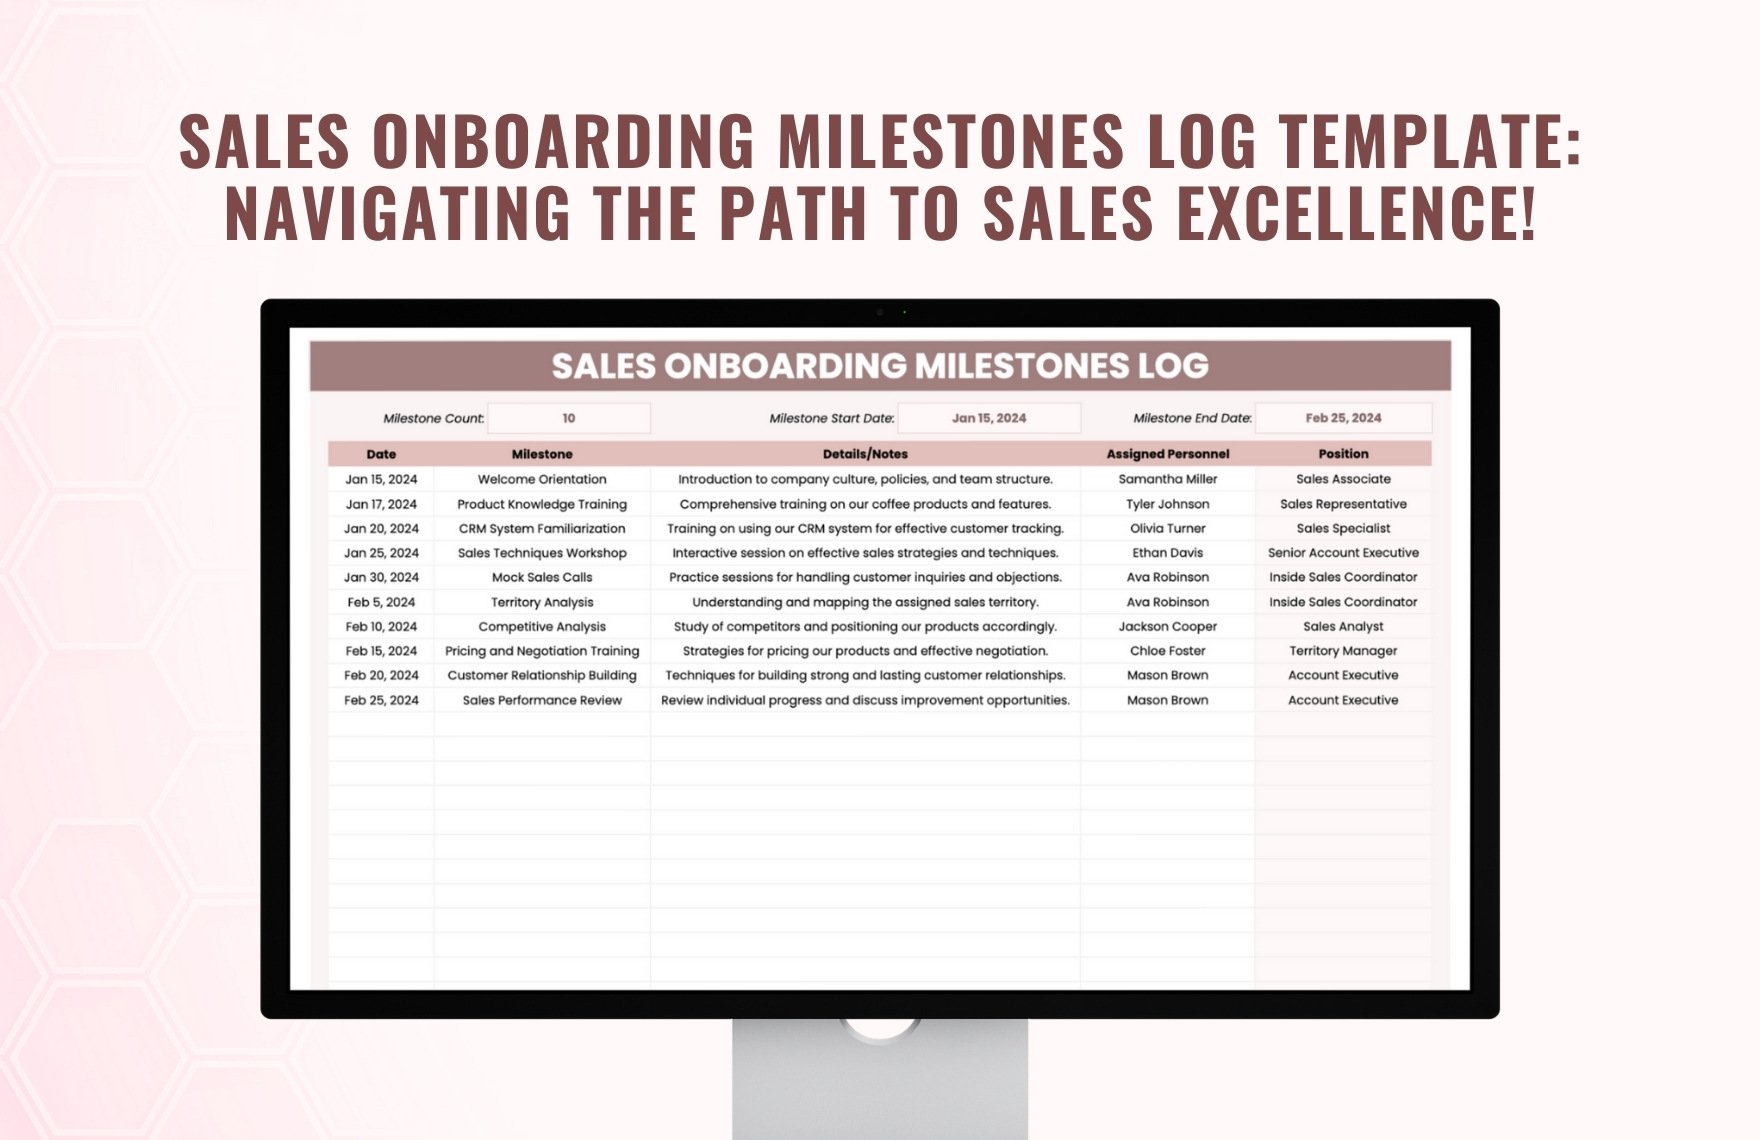 Sales Onboarding Milestones Log Template